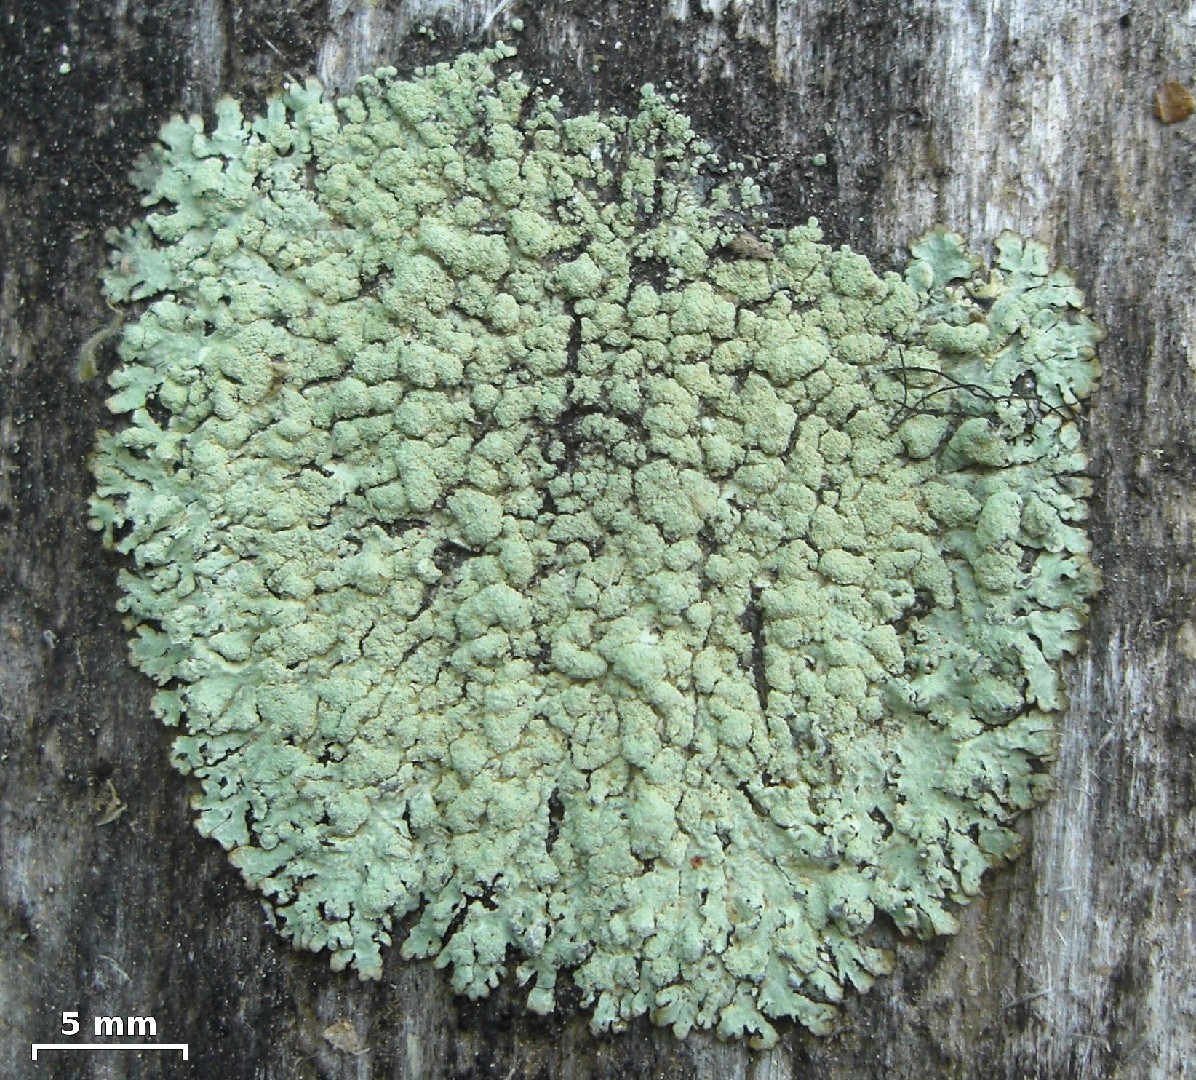 Green starburst lichen